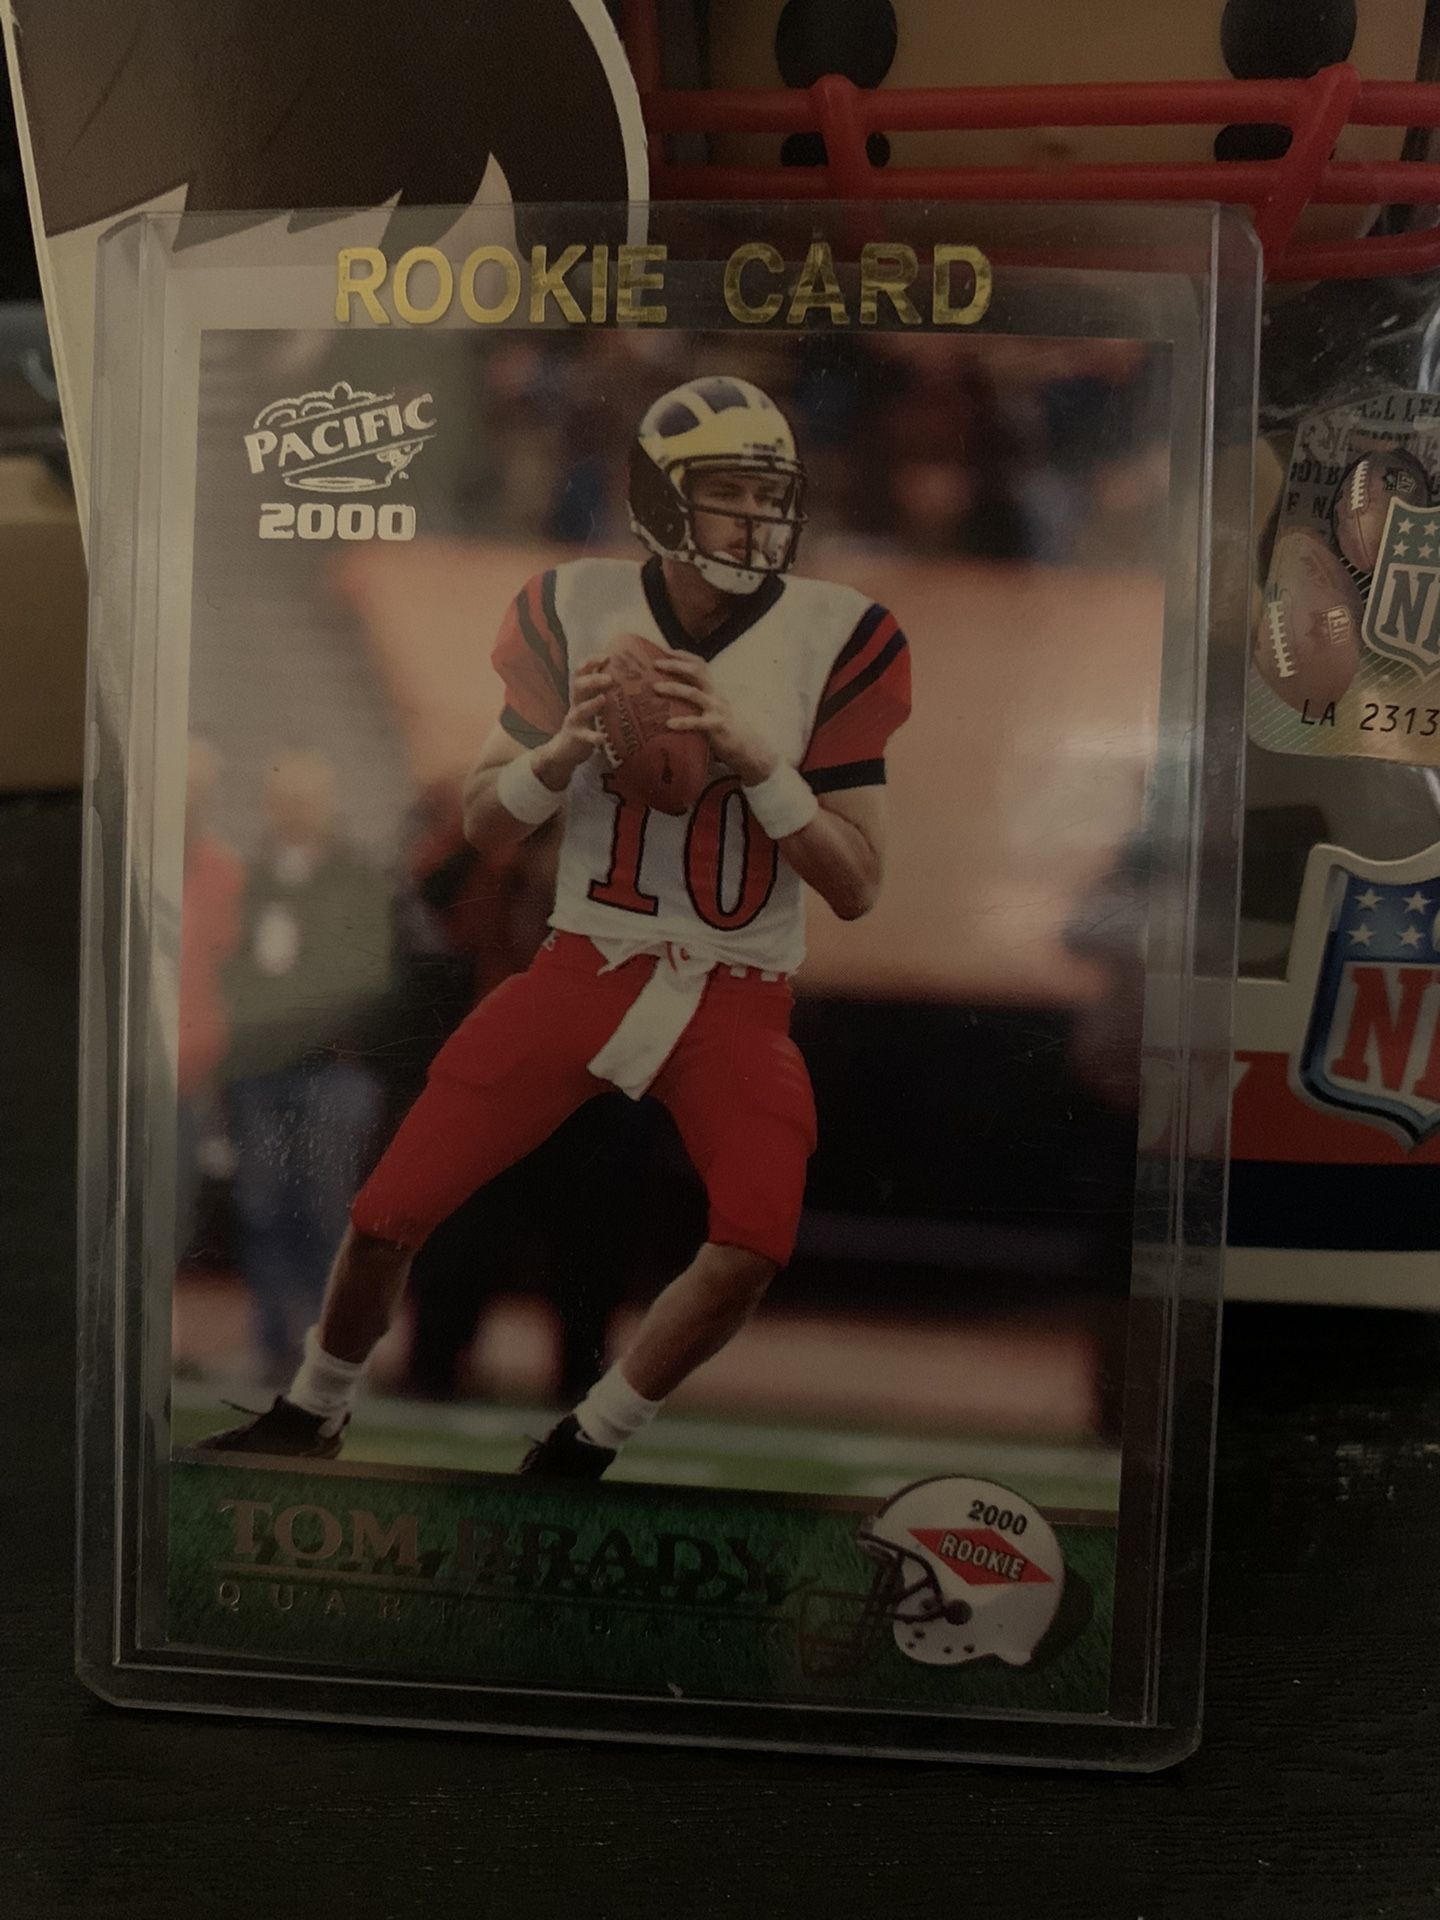 Tom Brady Rookie Card